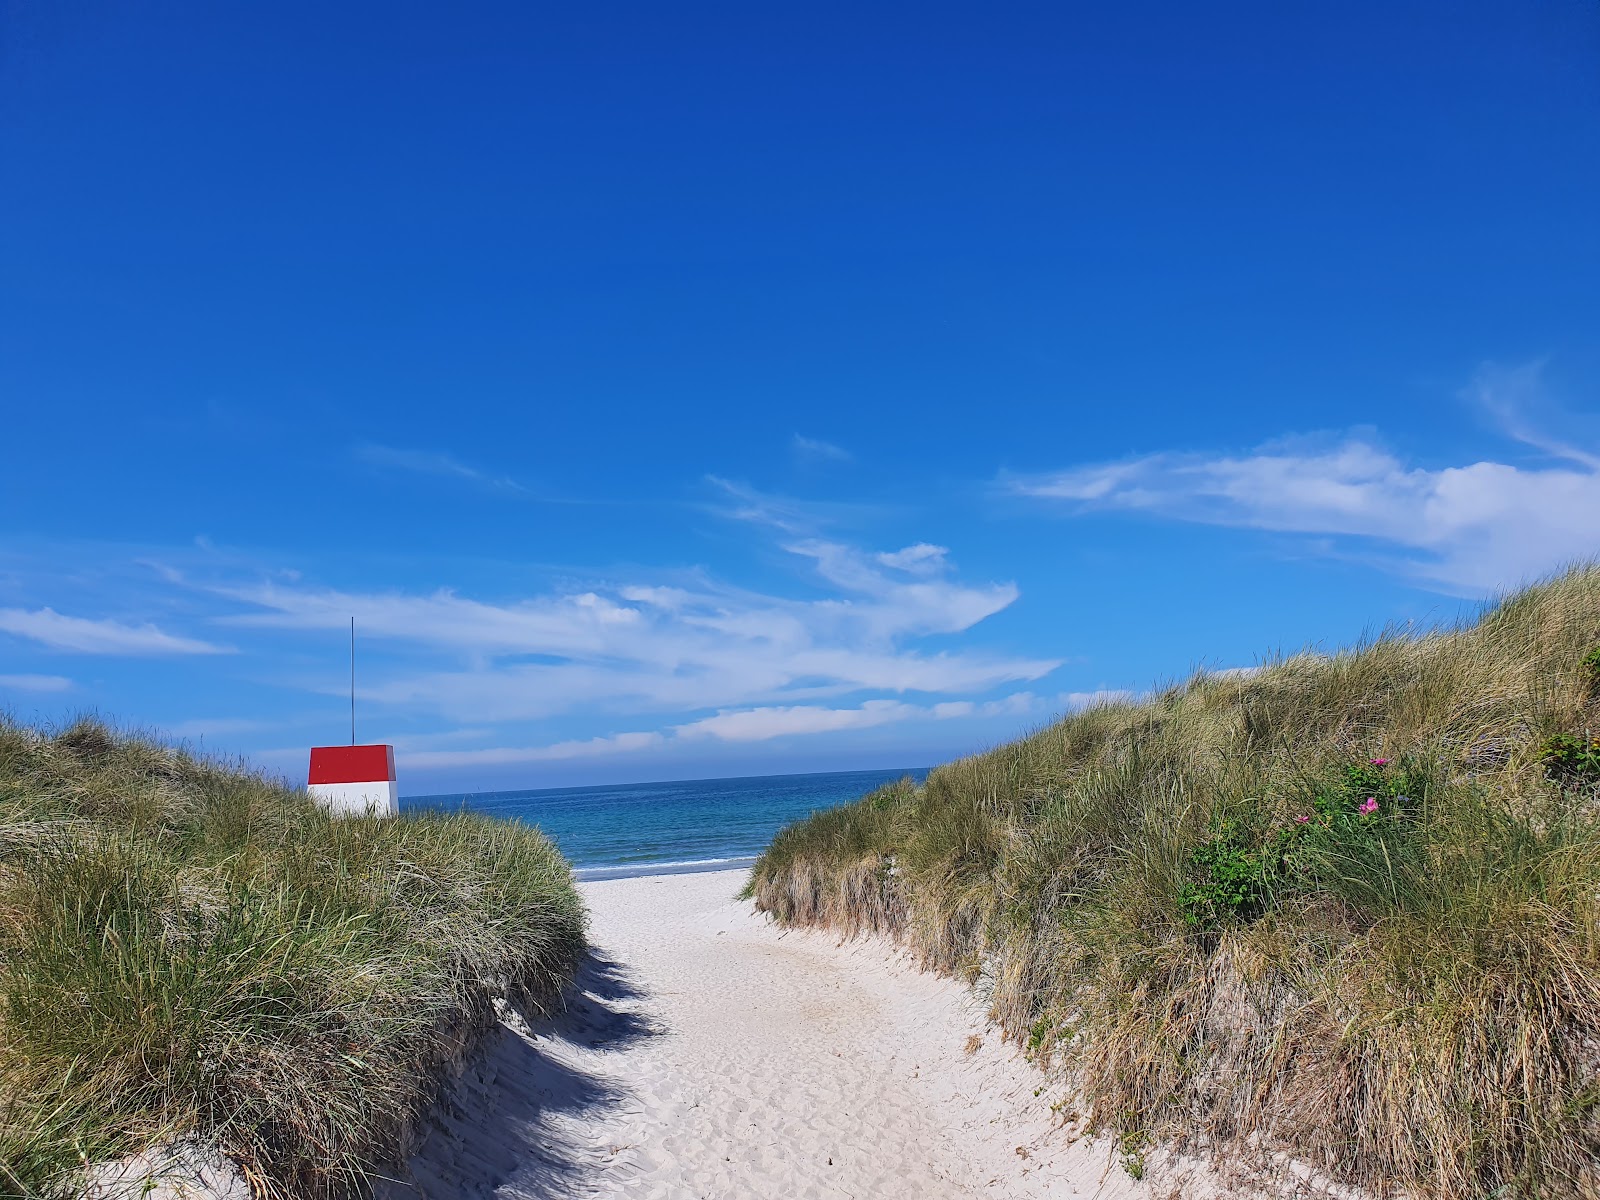 Zdjęcie Rorvig Beach - popularne miejsce wśród znawców relaksu